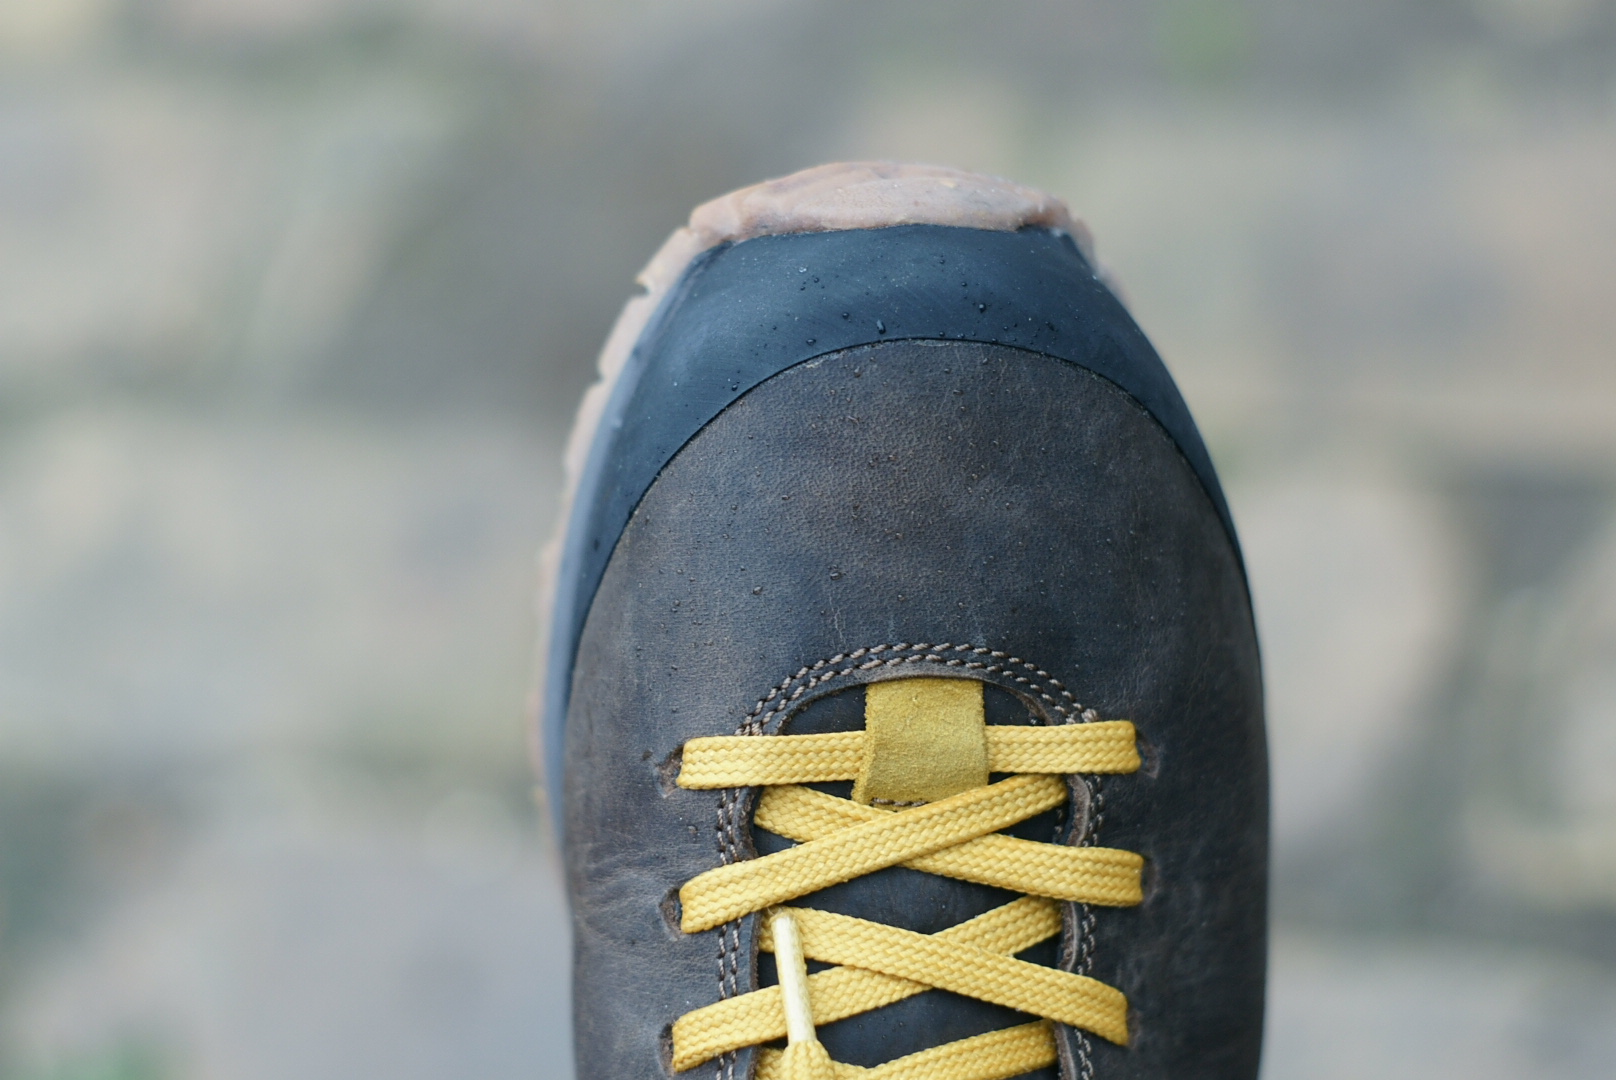 Špička boty je, stejně jako u těžších trekovek, vyztužená gumou